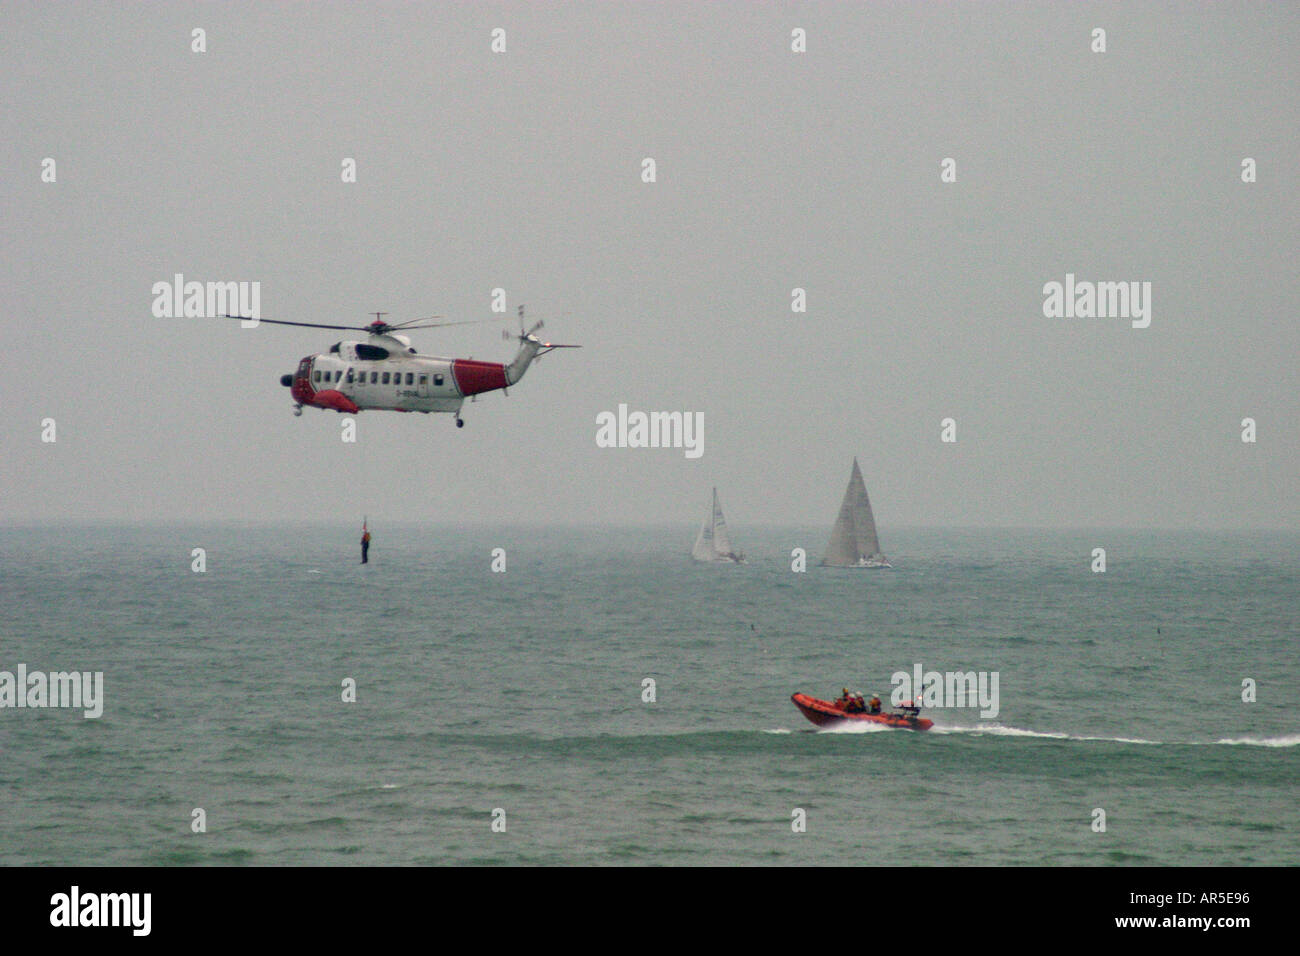 Helicóptero de rescate en el mar de aire con malacate y bote salvavidas Foto de stock